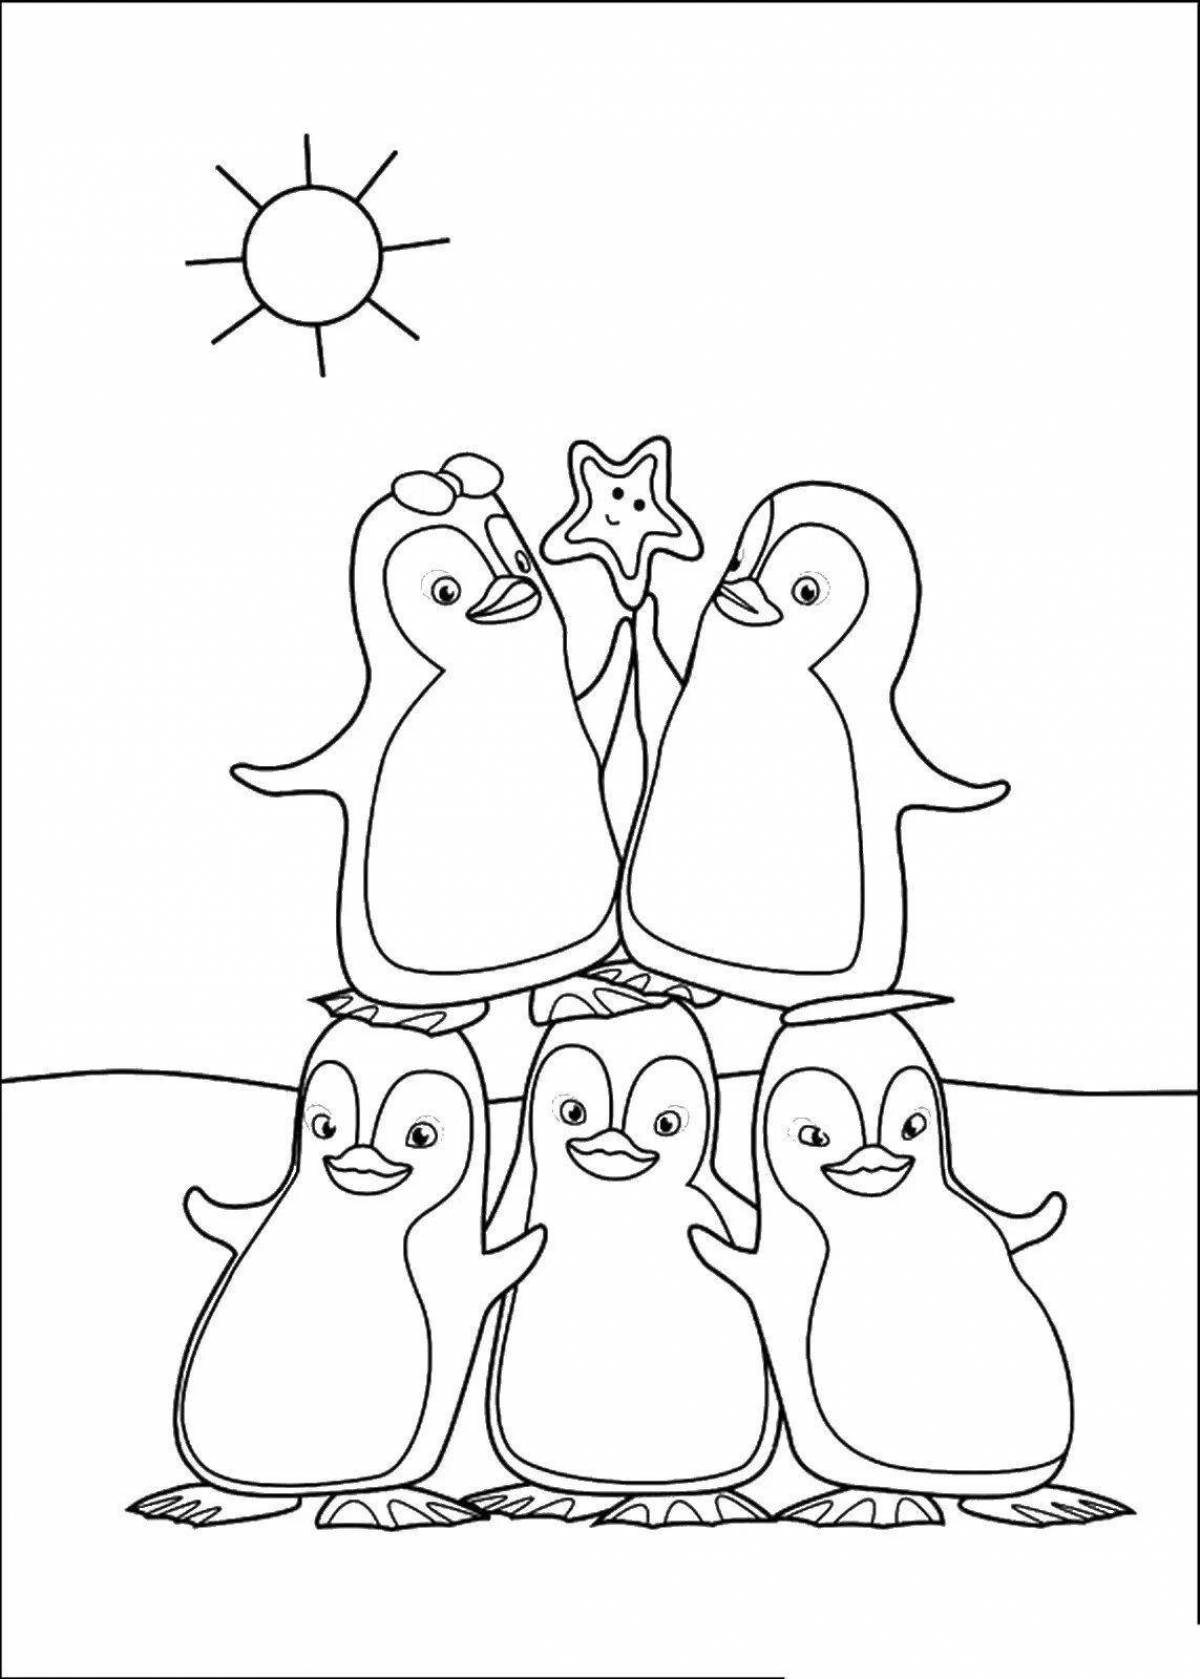 Раскраска яркая семья пингвинов